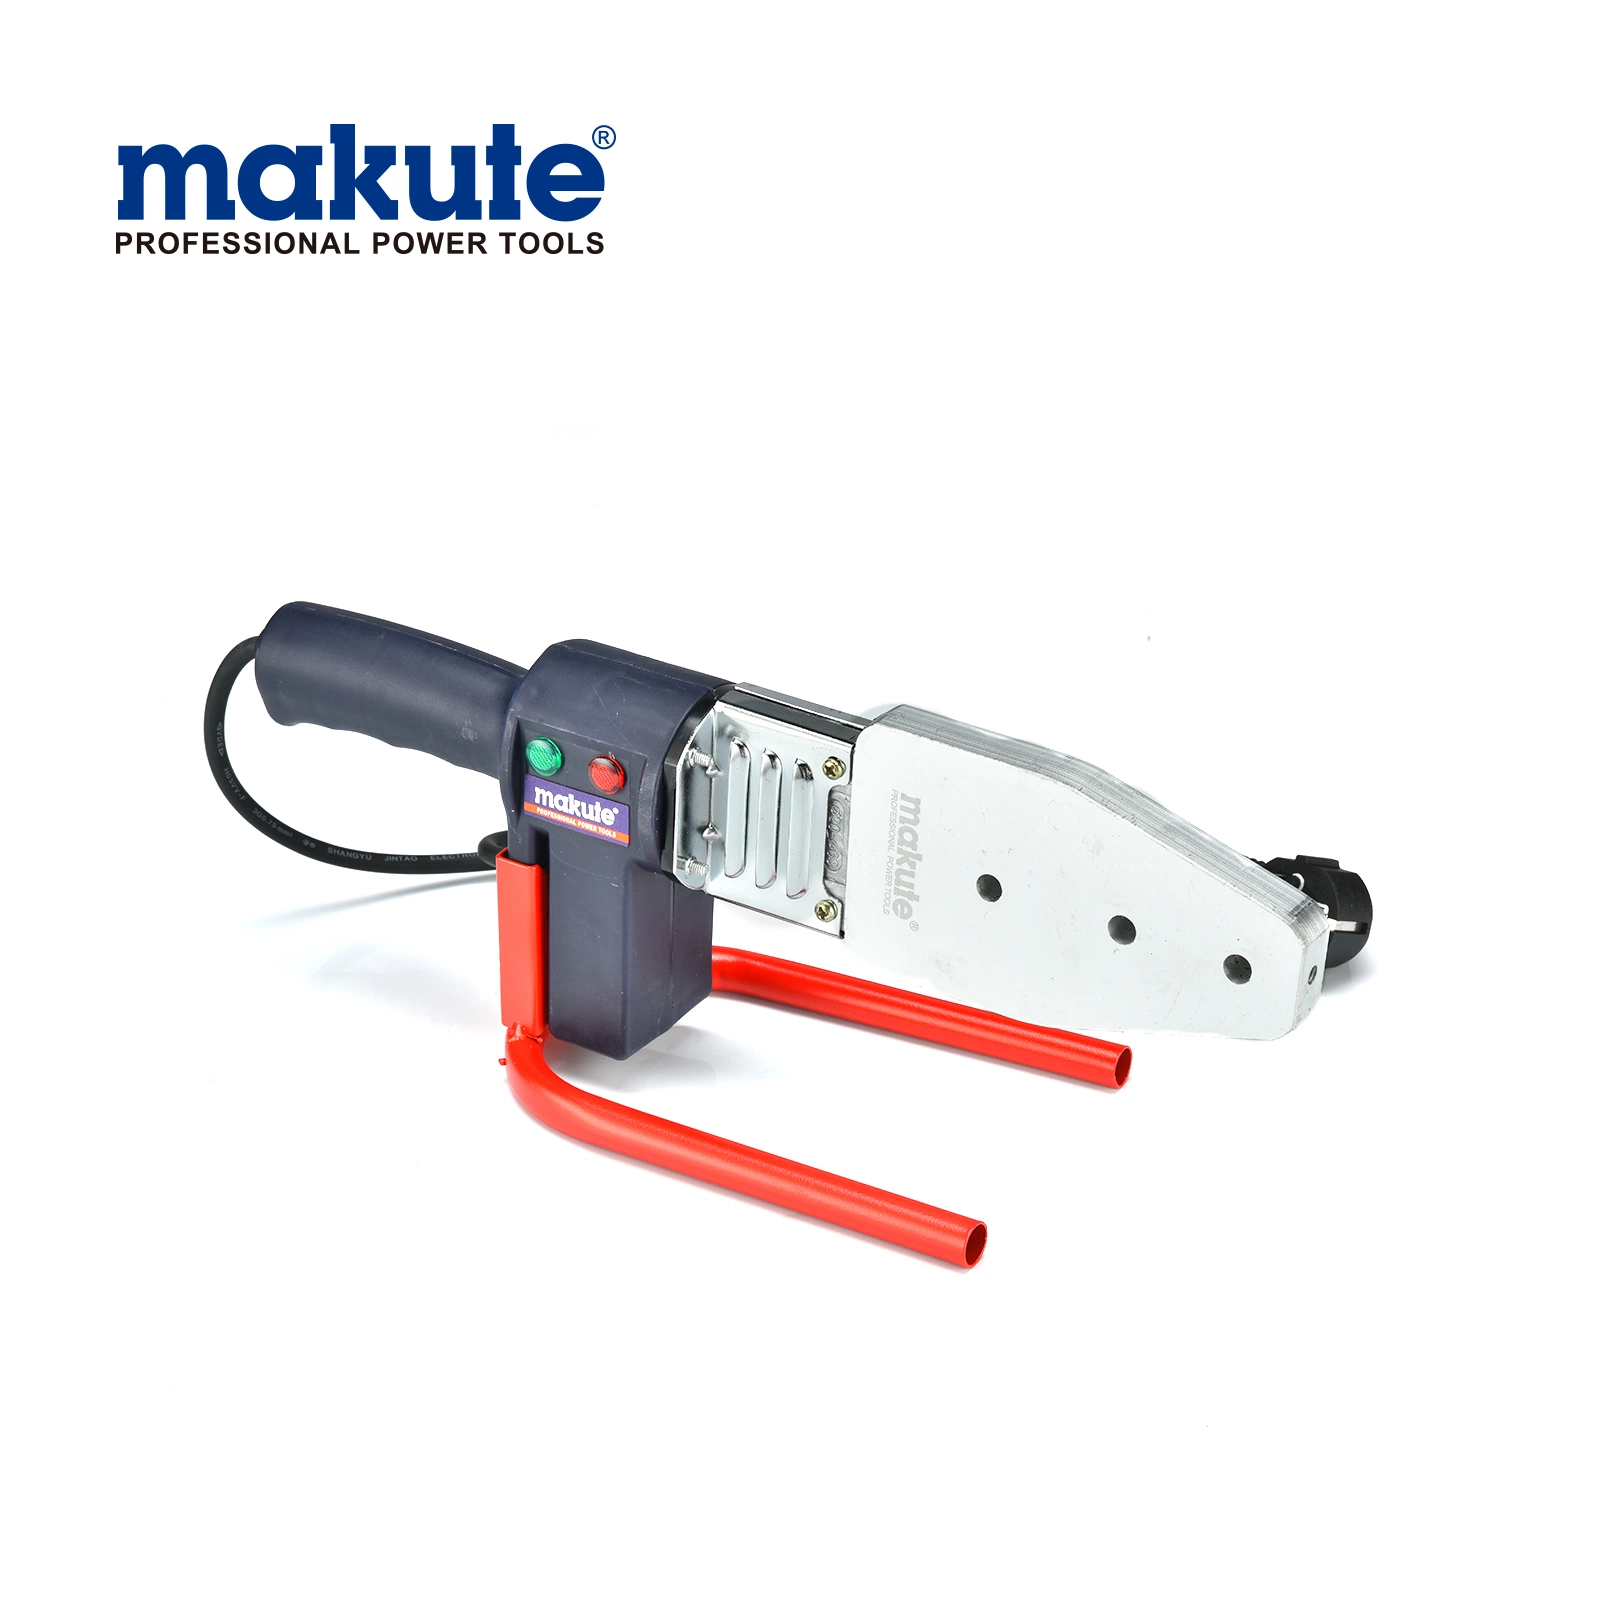 أدوات القدرة الكهربائية الخاصة بماكينة لحام الأنابيب Makute Pr (PW003)